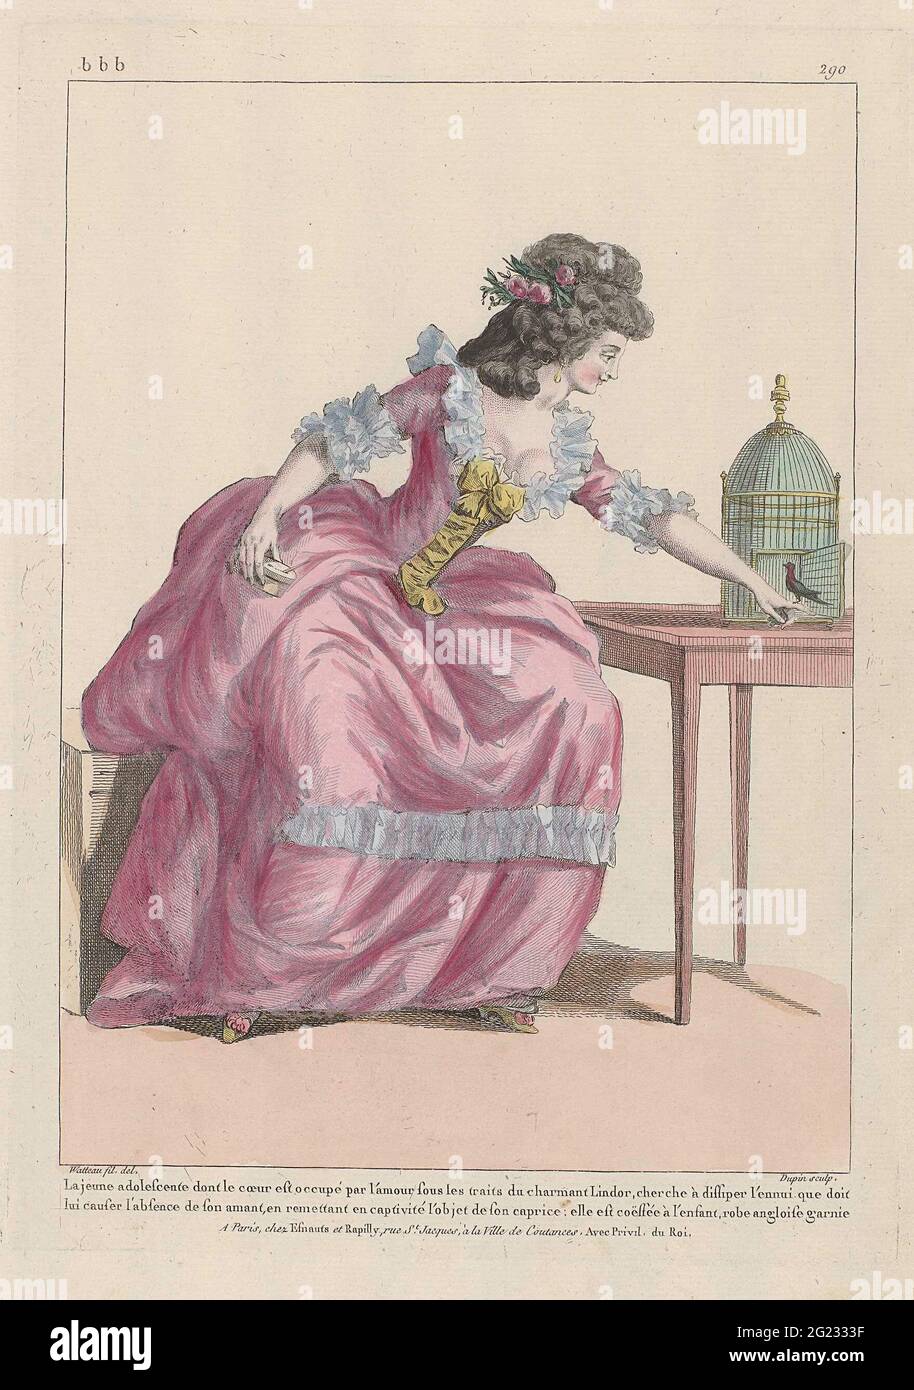 Galerie des modes et costumes English, 1785, BBB 290: La Jeune adolescent  (...). Selon la légende, la jeune femme est amoureuse de la charmante  Lindor et cherche la distraction pour l'oublier. Elle